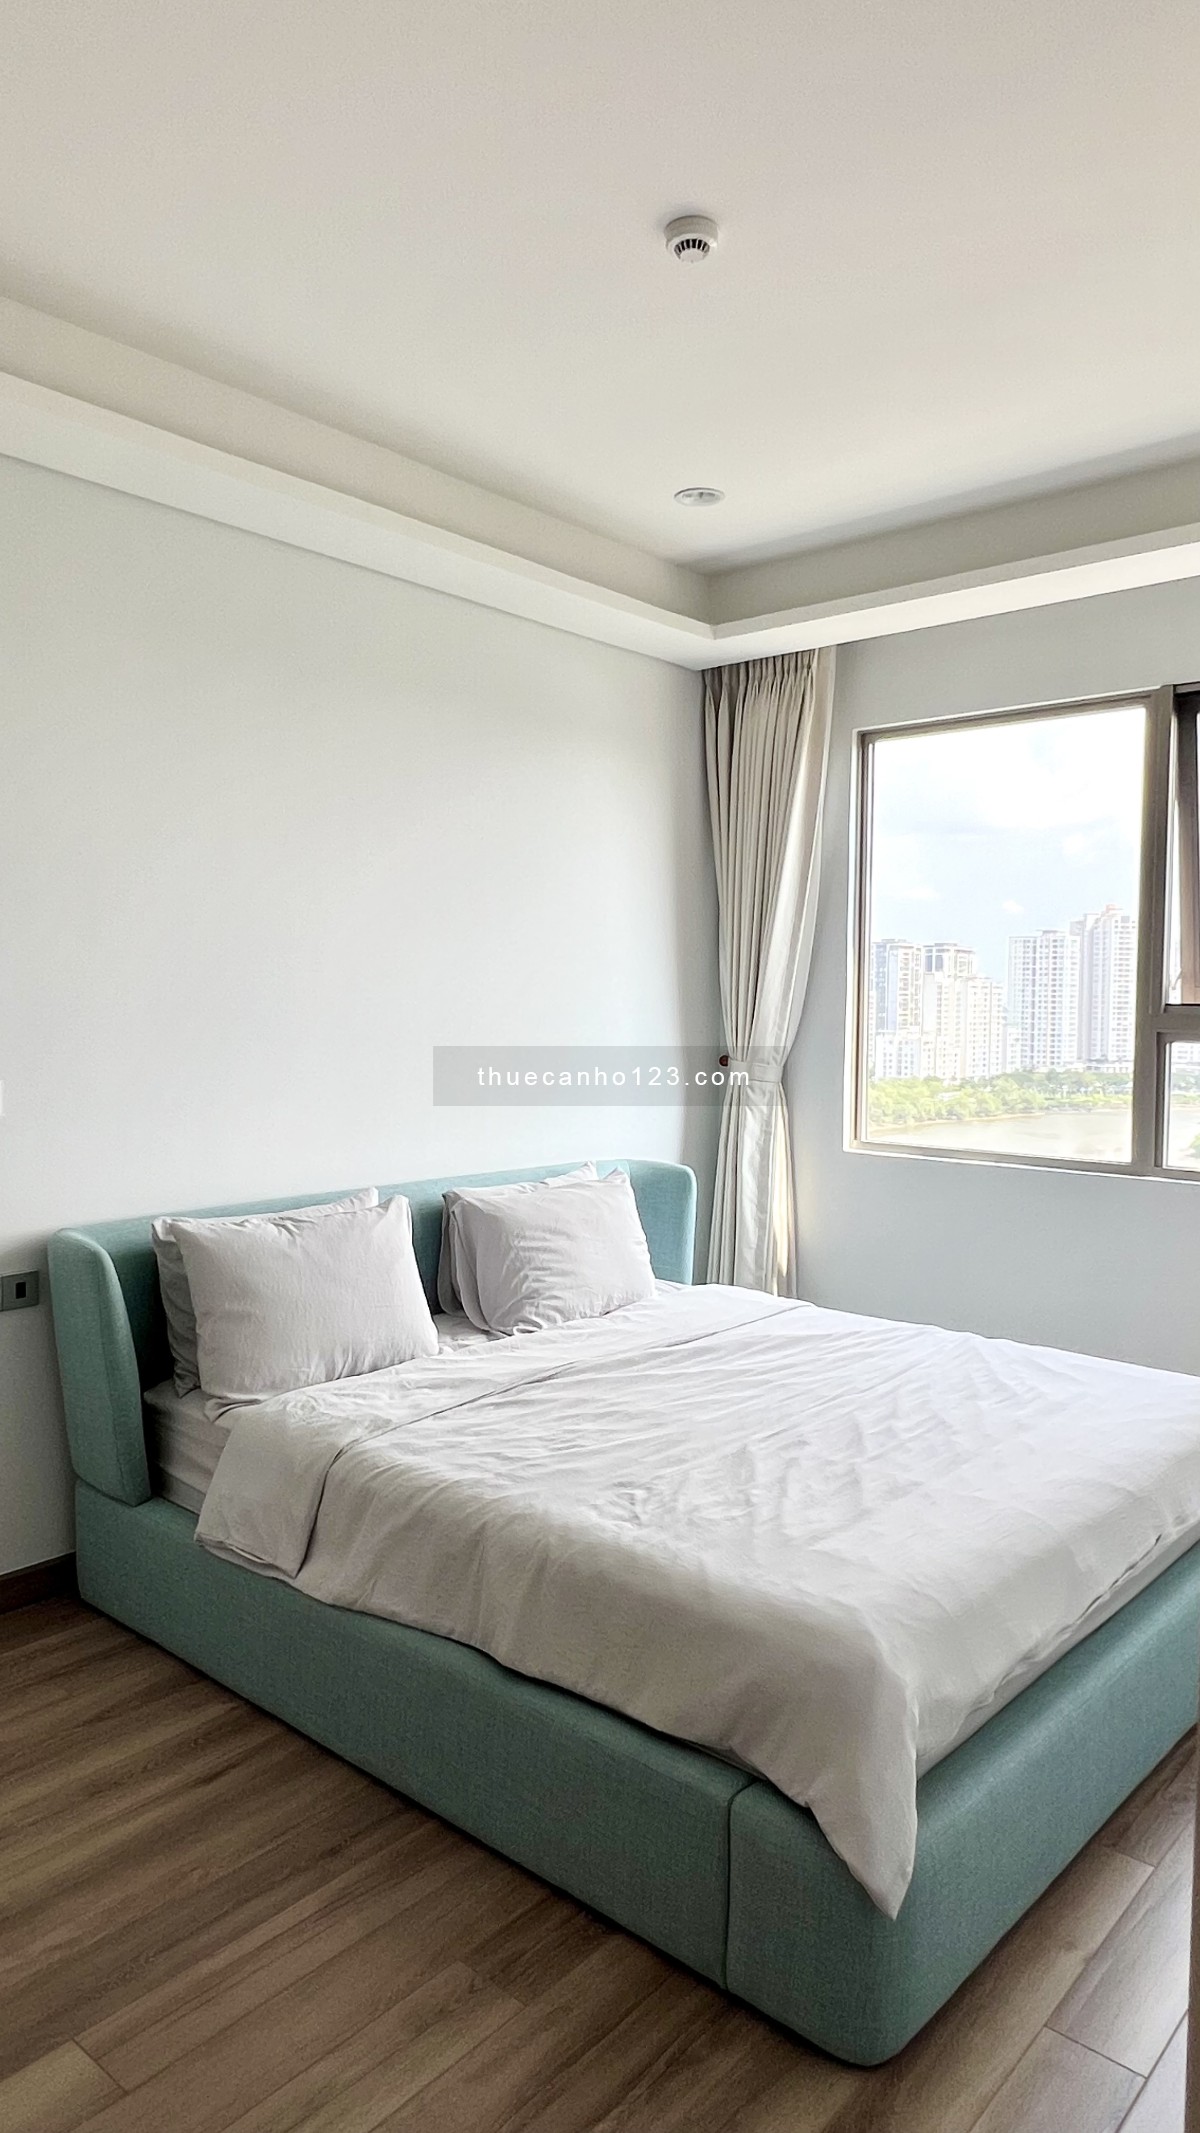 Horizon - cho thuê căn hộ view siêu đẹp FULL NT cao cấp 3 phòng ngủ 121.61m2 giá tốt